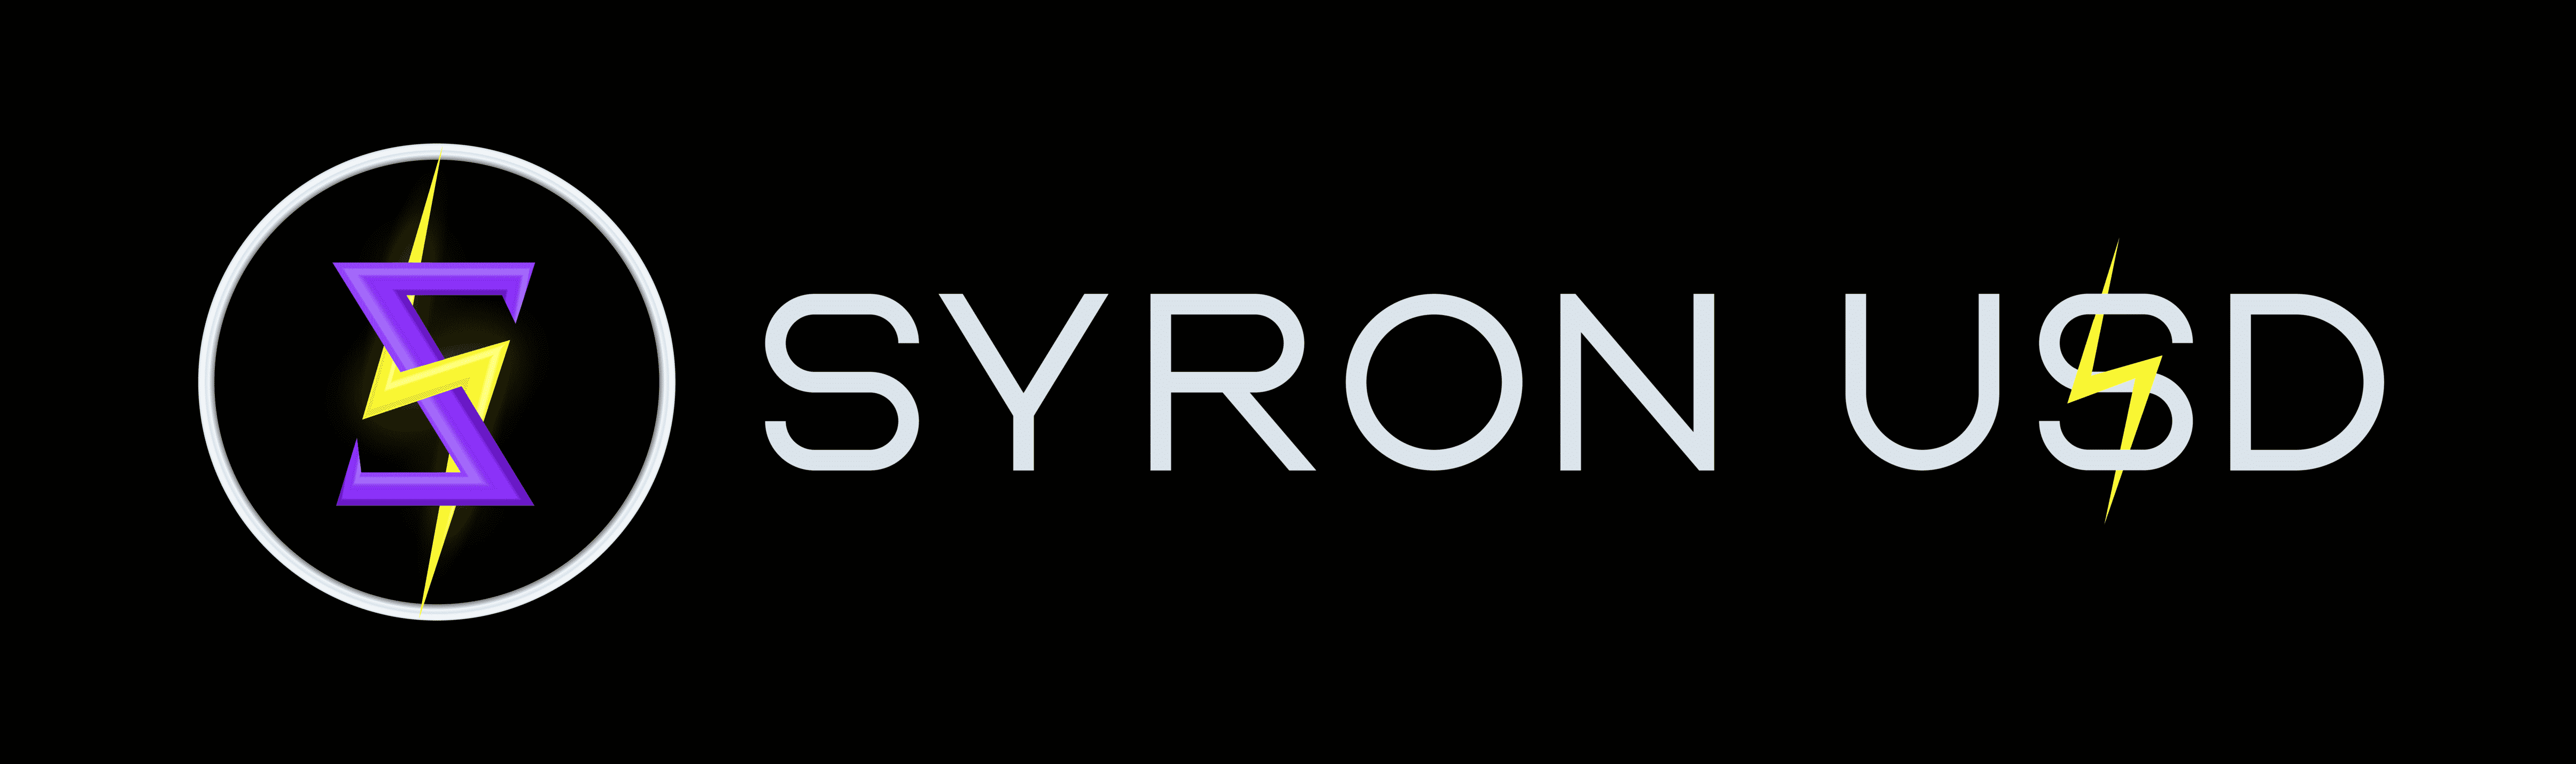 Syron logo